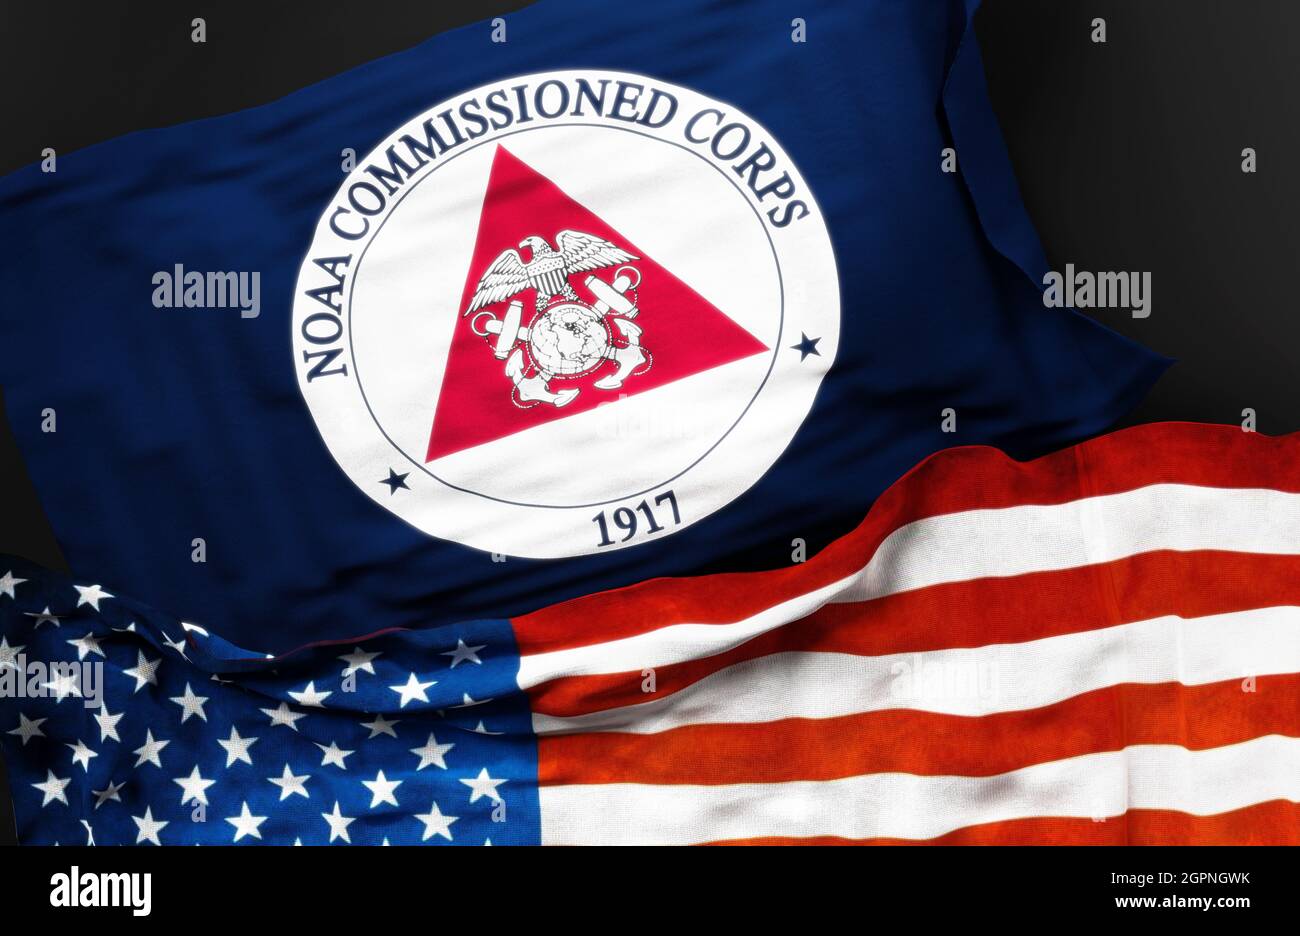 Bandiera del NOAA commissionato ufficiale Corps insieme ad una bandiera degli Stati Uniti d'America come simbolo di un collegamento tra loro, 3d illustratio Foto Stock